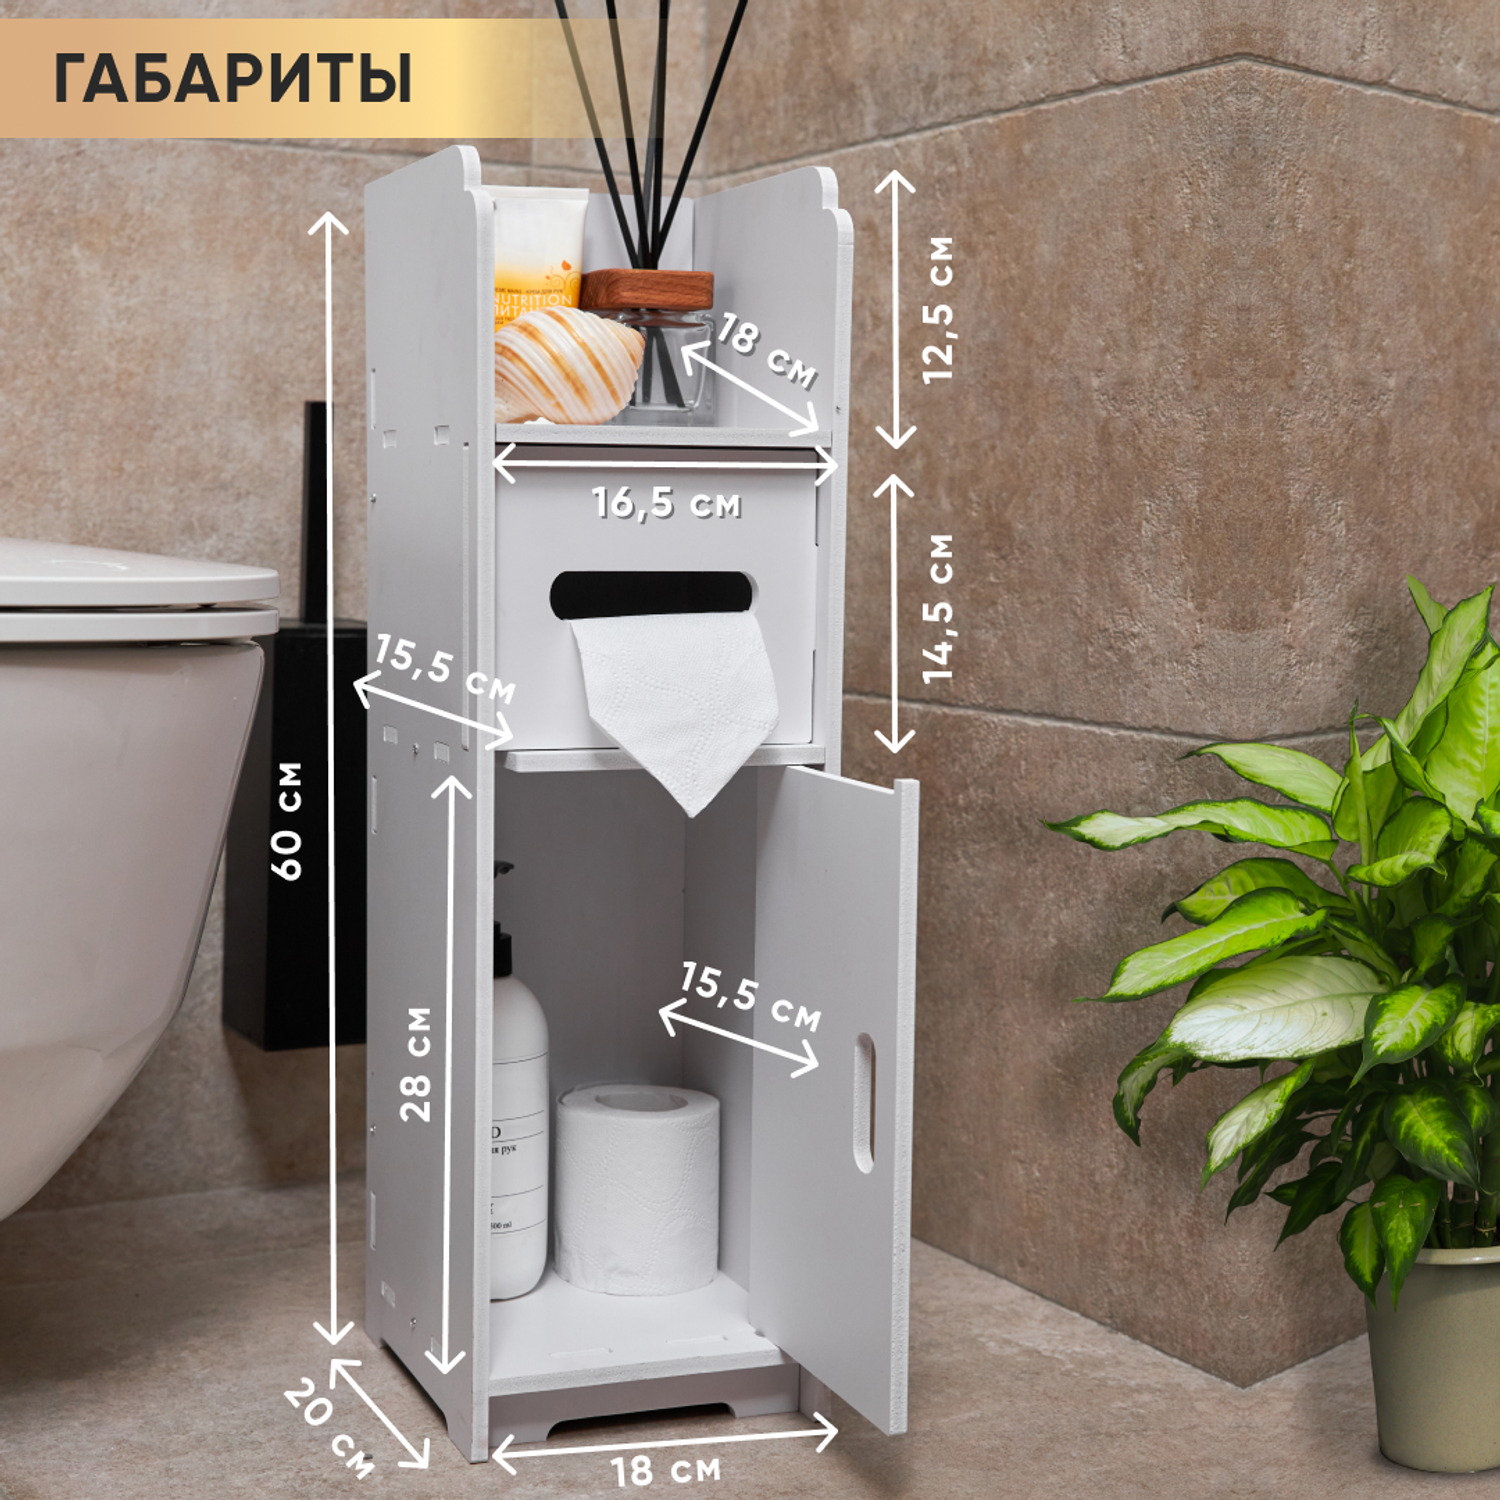 Шкафы-пенал oqqi для туалетной бумаги или мелочей в ванной комнате - фото 9